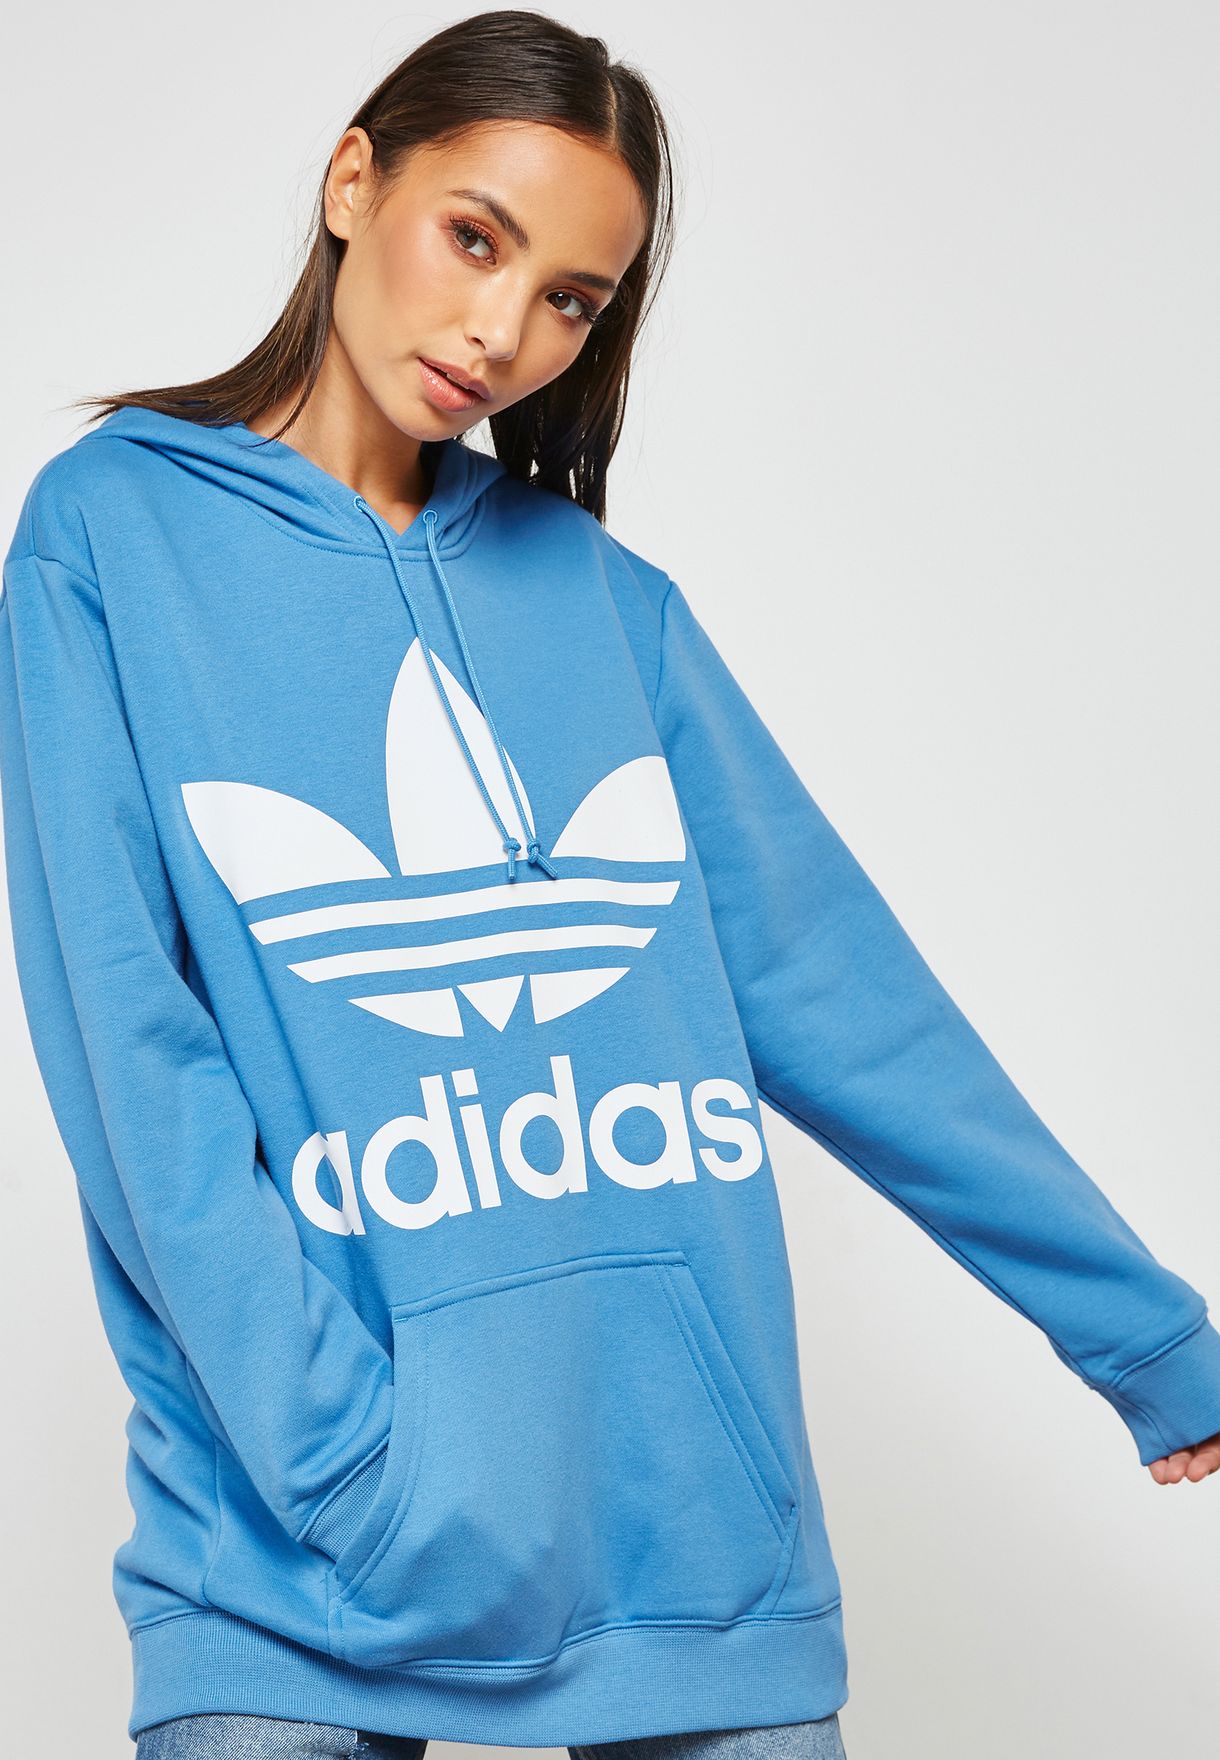 adidas women's hoodie blue